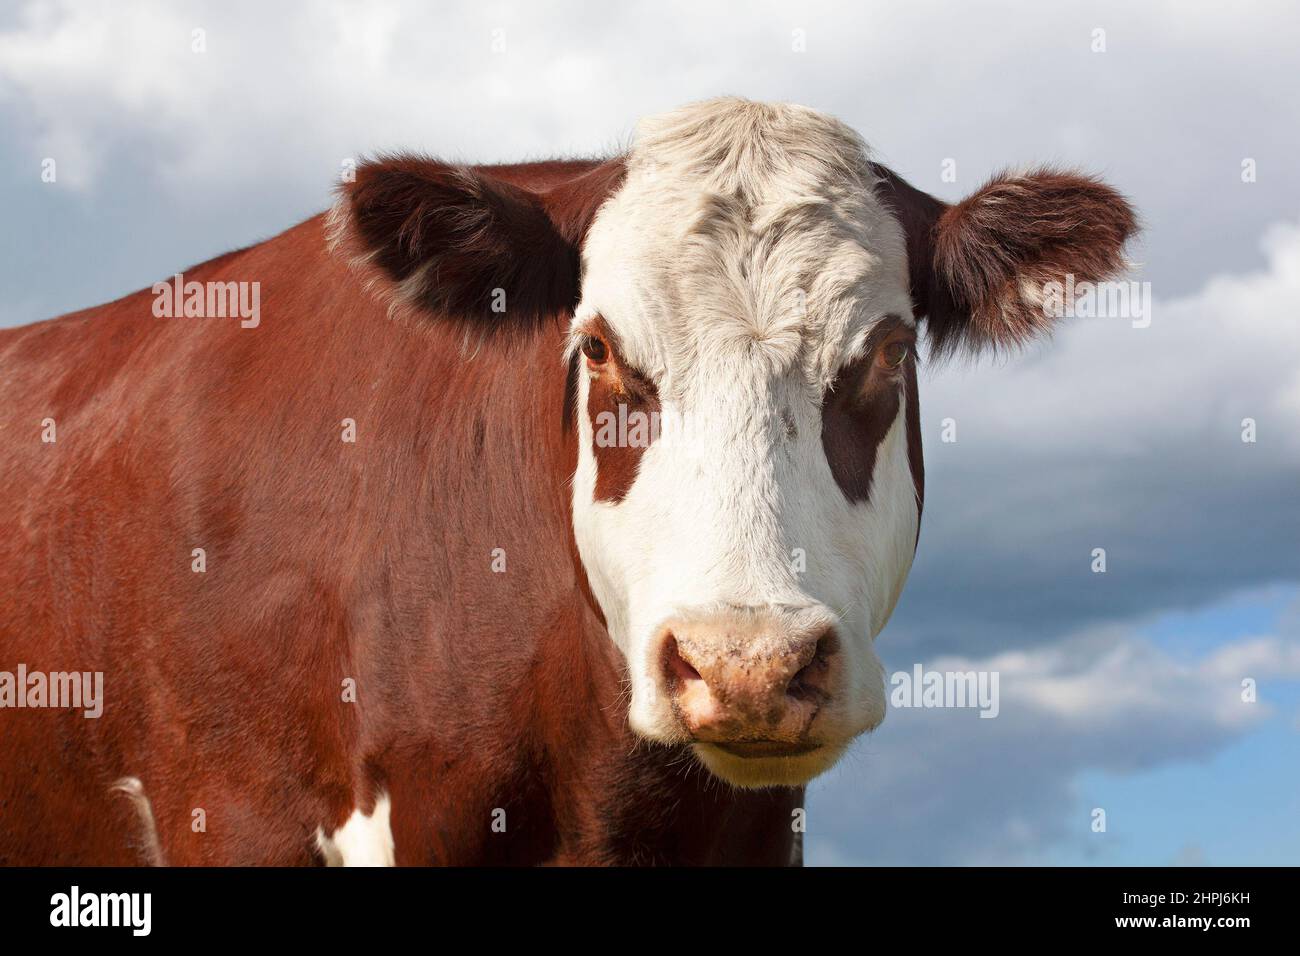 Hereford mucca all'aperto nelle praterie canadesi, primo piano della testa e del viso Foto Stock